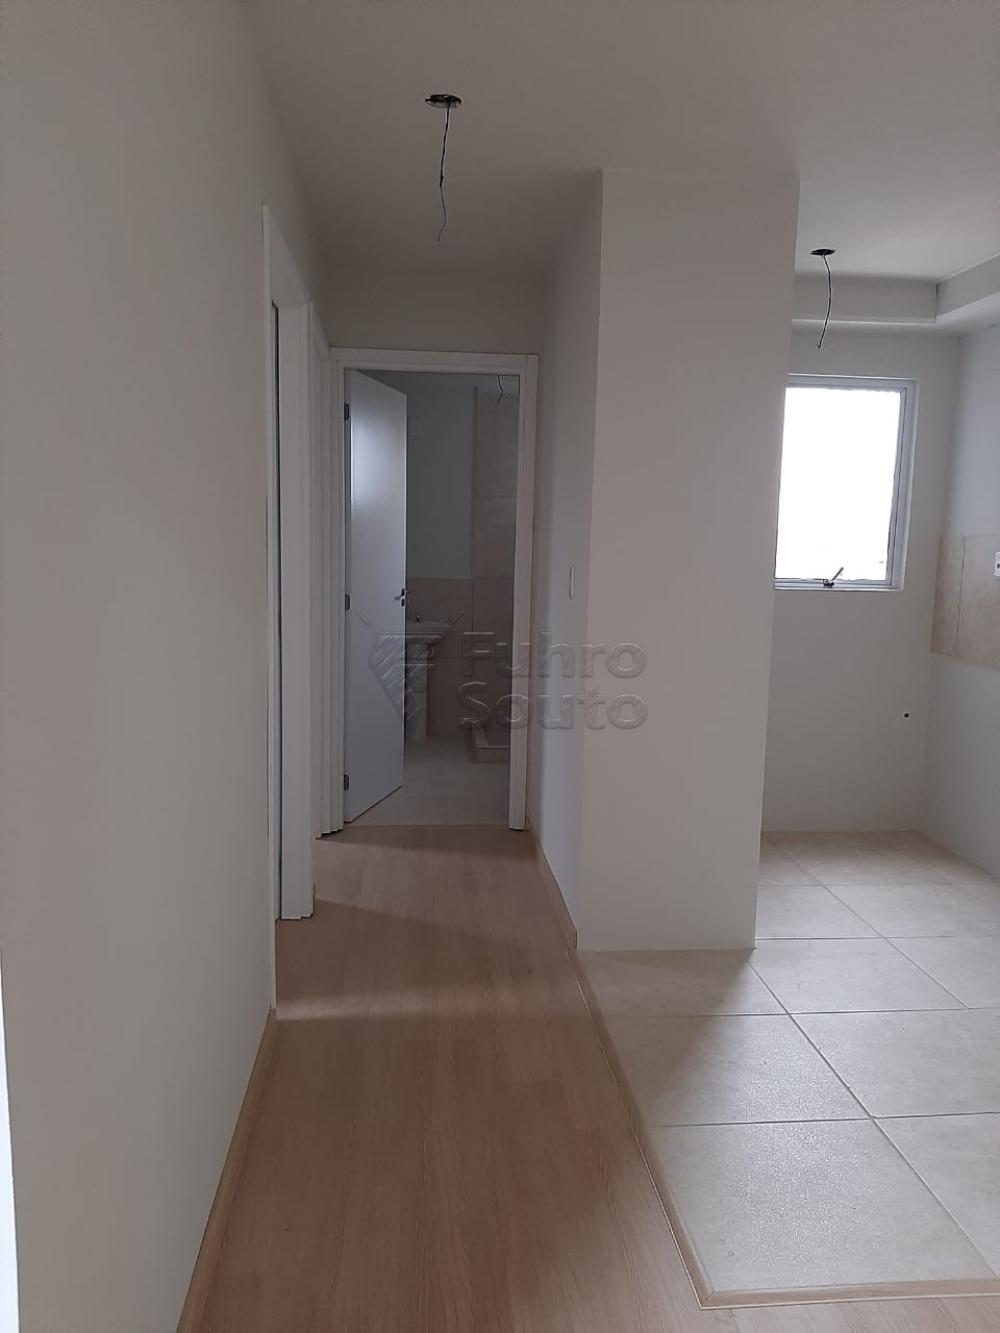 Comprar Apartamento / Padrão em Pelotas R$ 148.000,00 - Foto 4